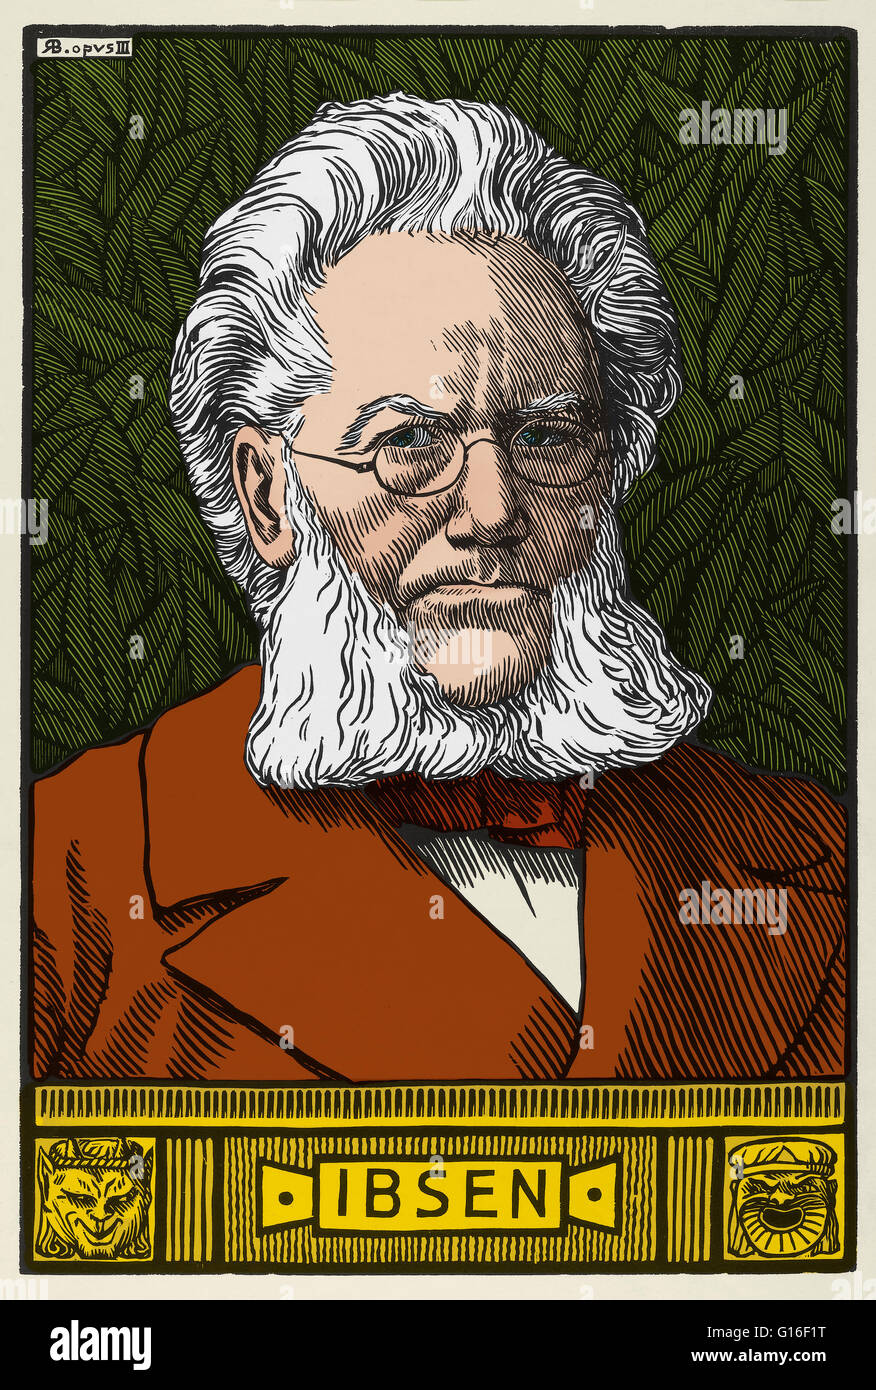 Porträt von Henrik Ibsen, ab 1899, des schottischen Künstlers Robert Bryden (1865-1939). Ibsen wurde eine große aus dem 19. Jahrhundert norwegischer Dramatiker, Theaterregisseur und Dichter. Er wird oft als "Vater des Realismus" bezeichnet und ist einer der Mitbegründer der moderne Stockfoto